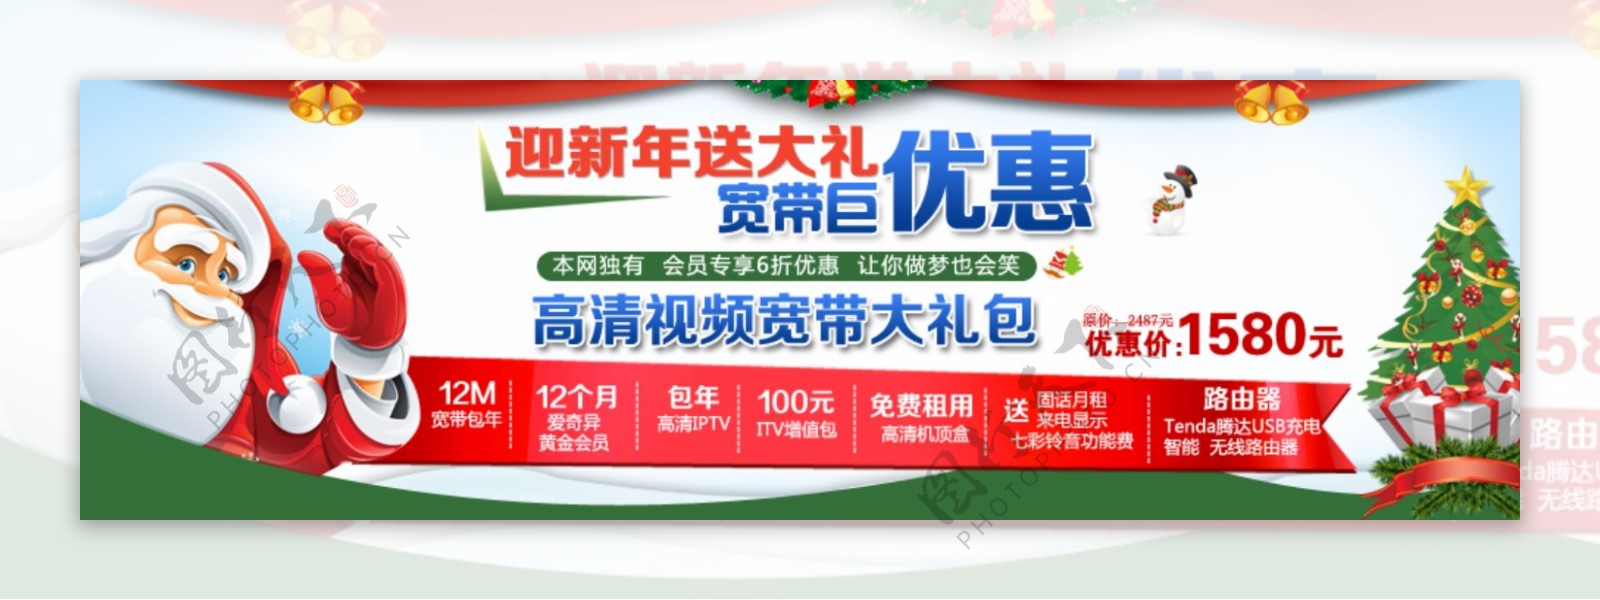 中国电信圣诞活动首页素材下载